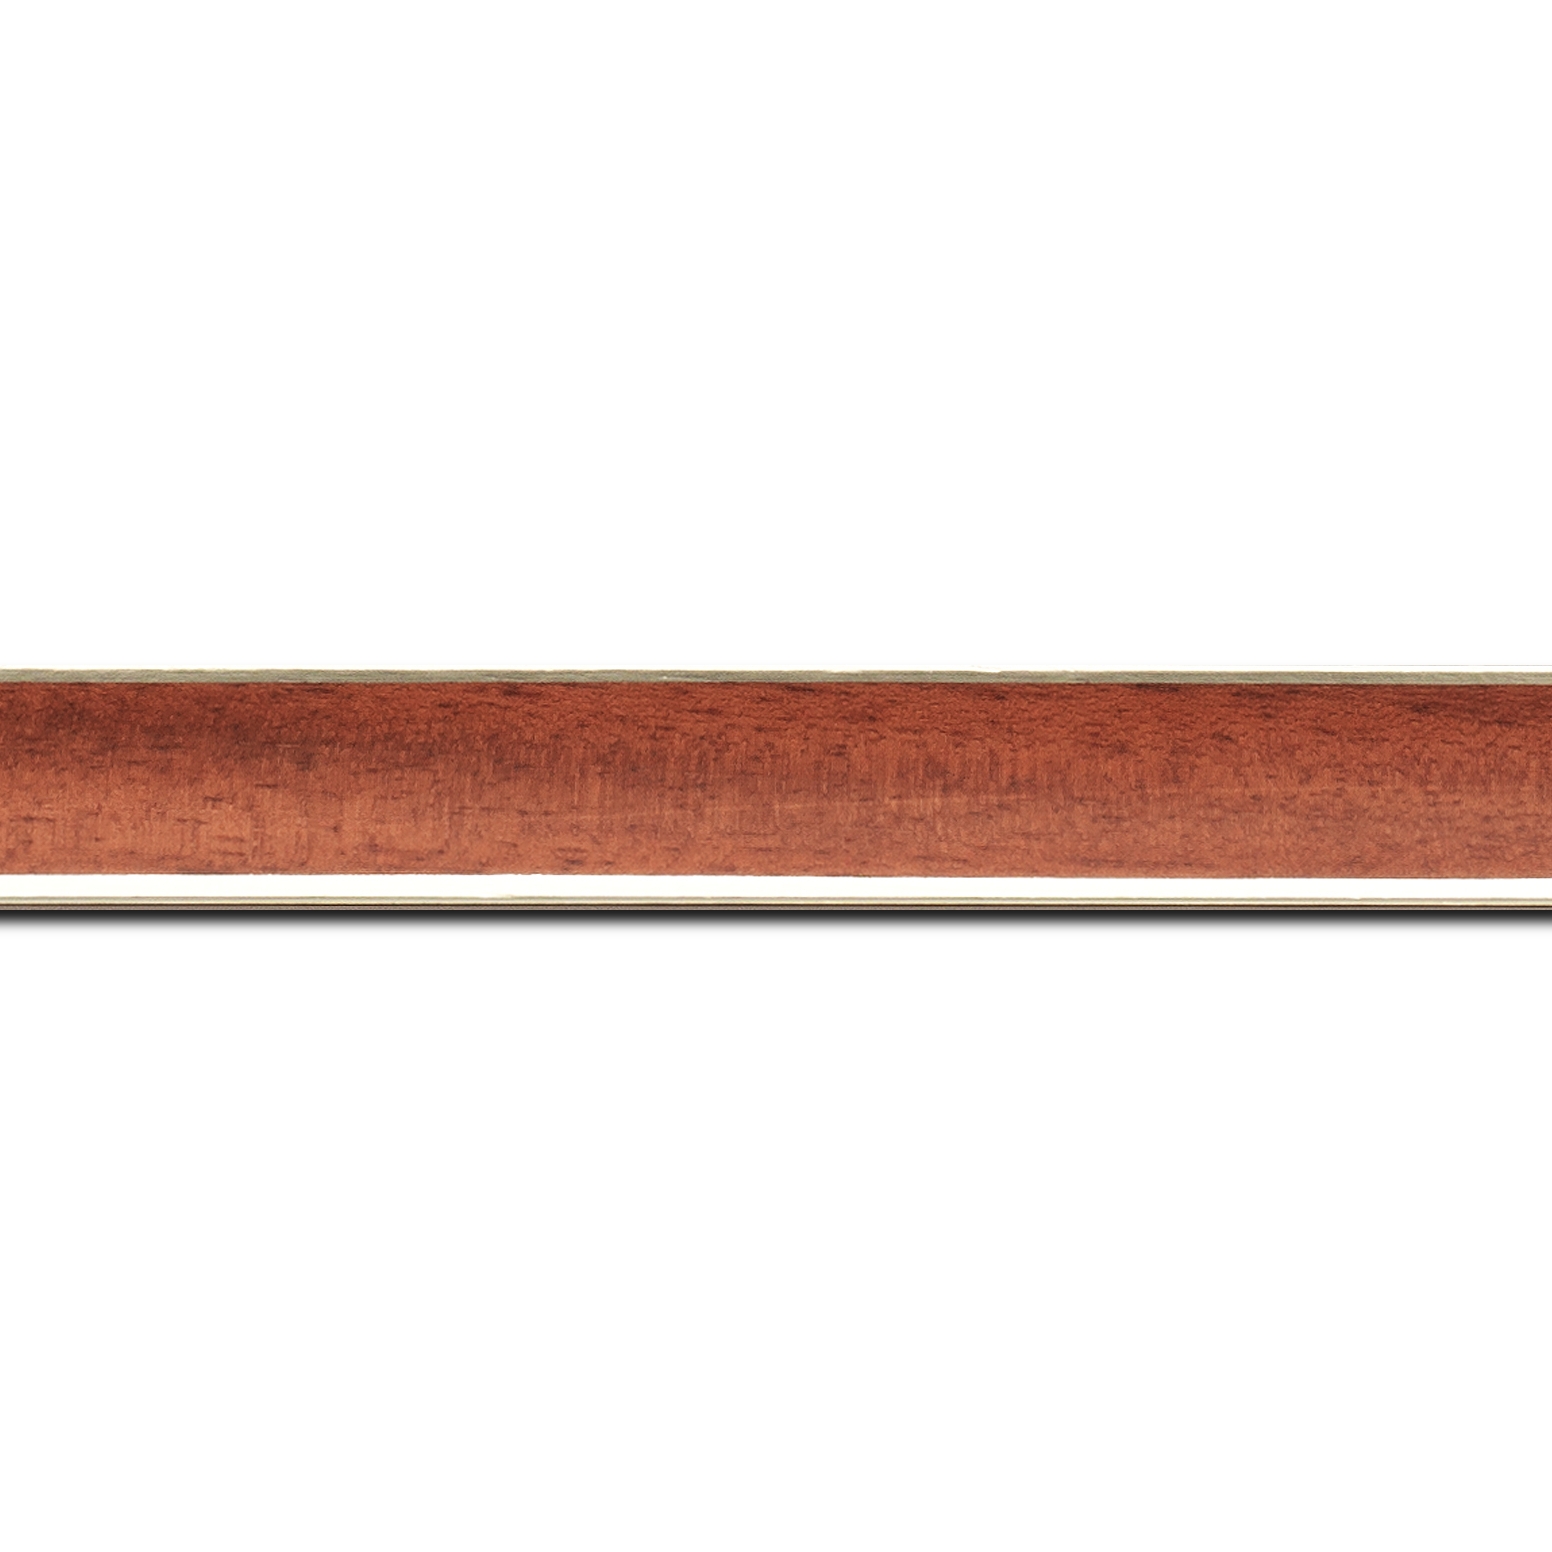 Baguette longueur 1.40m bois profil concave largeur 2.4cm couleur acajou  satiné  filet argent de chaque coté (pore du bois apparent)